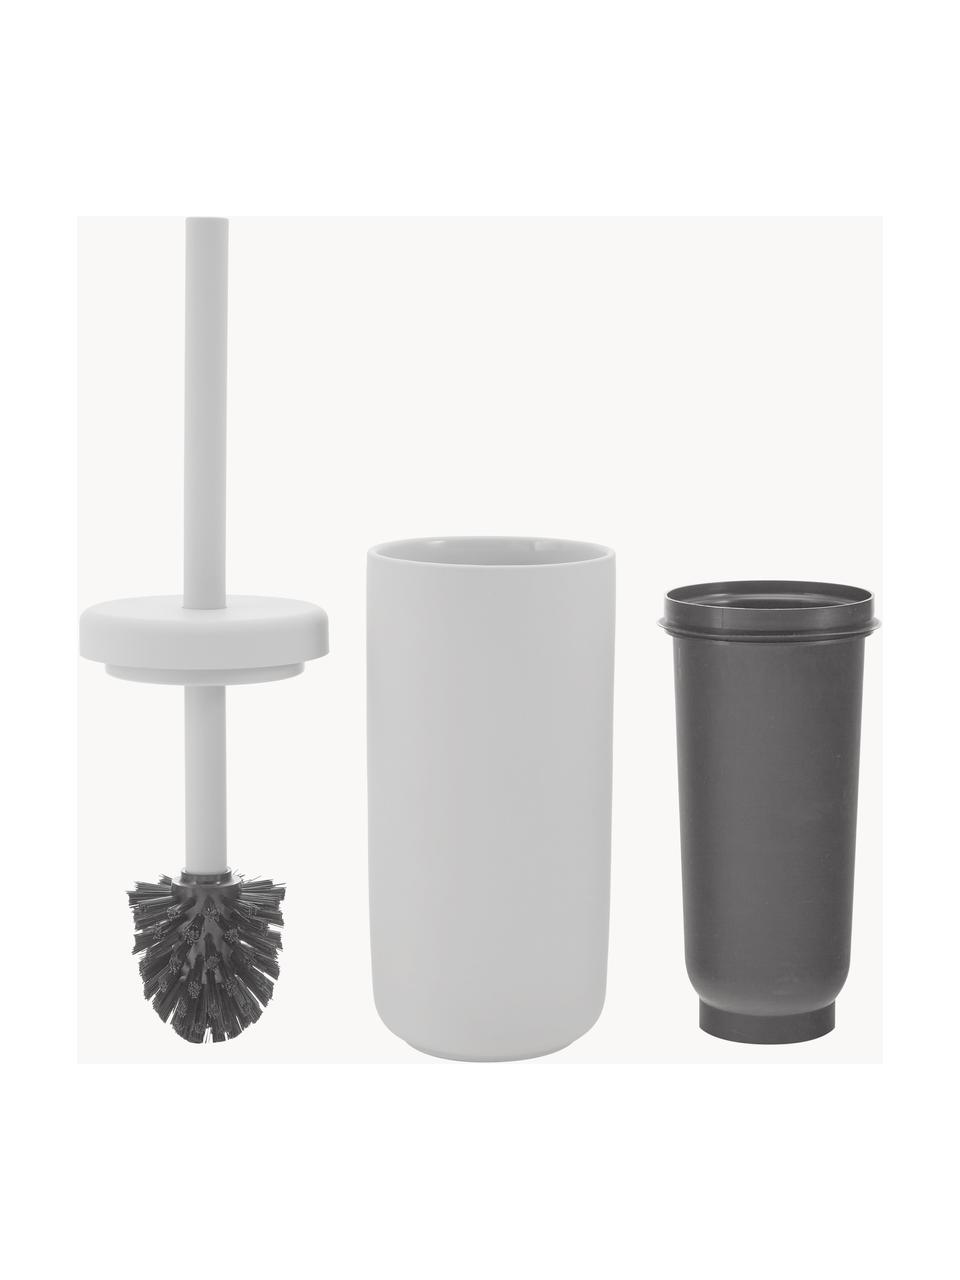 Toilettenbürste Ume mit Steingut-Behälter, Behälter: Steingut mit Soft-Touch-O, Griff: Kunststoff, Hellgrau, Ø 10 x H 39 cm